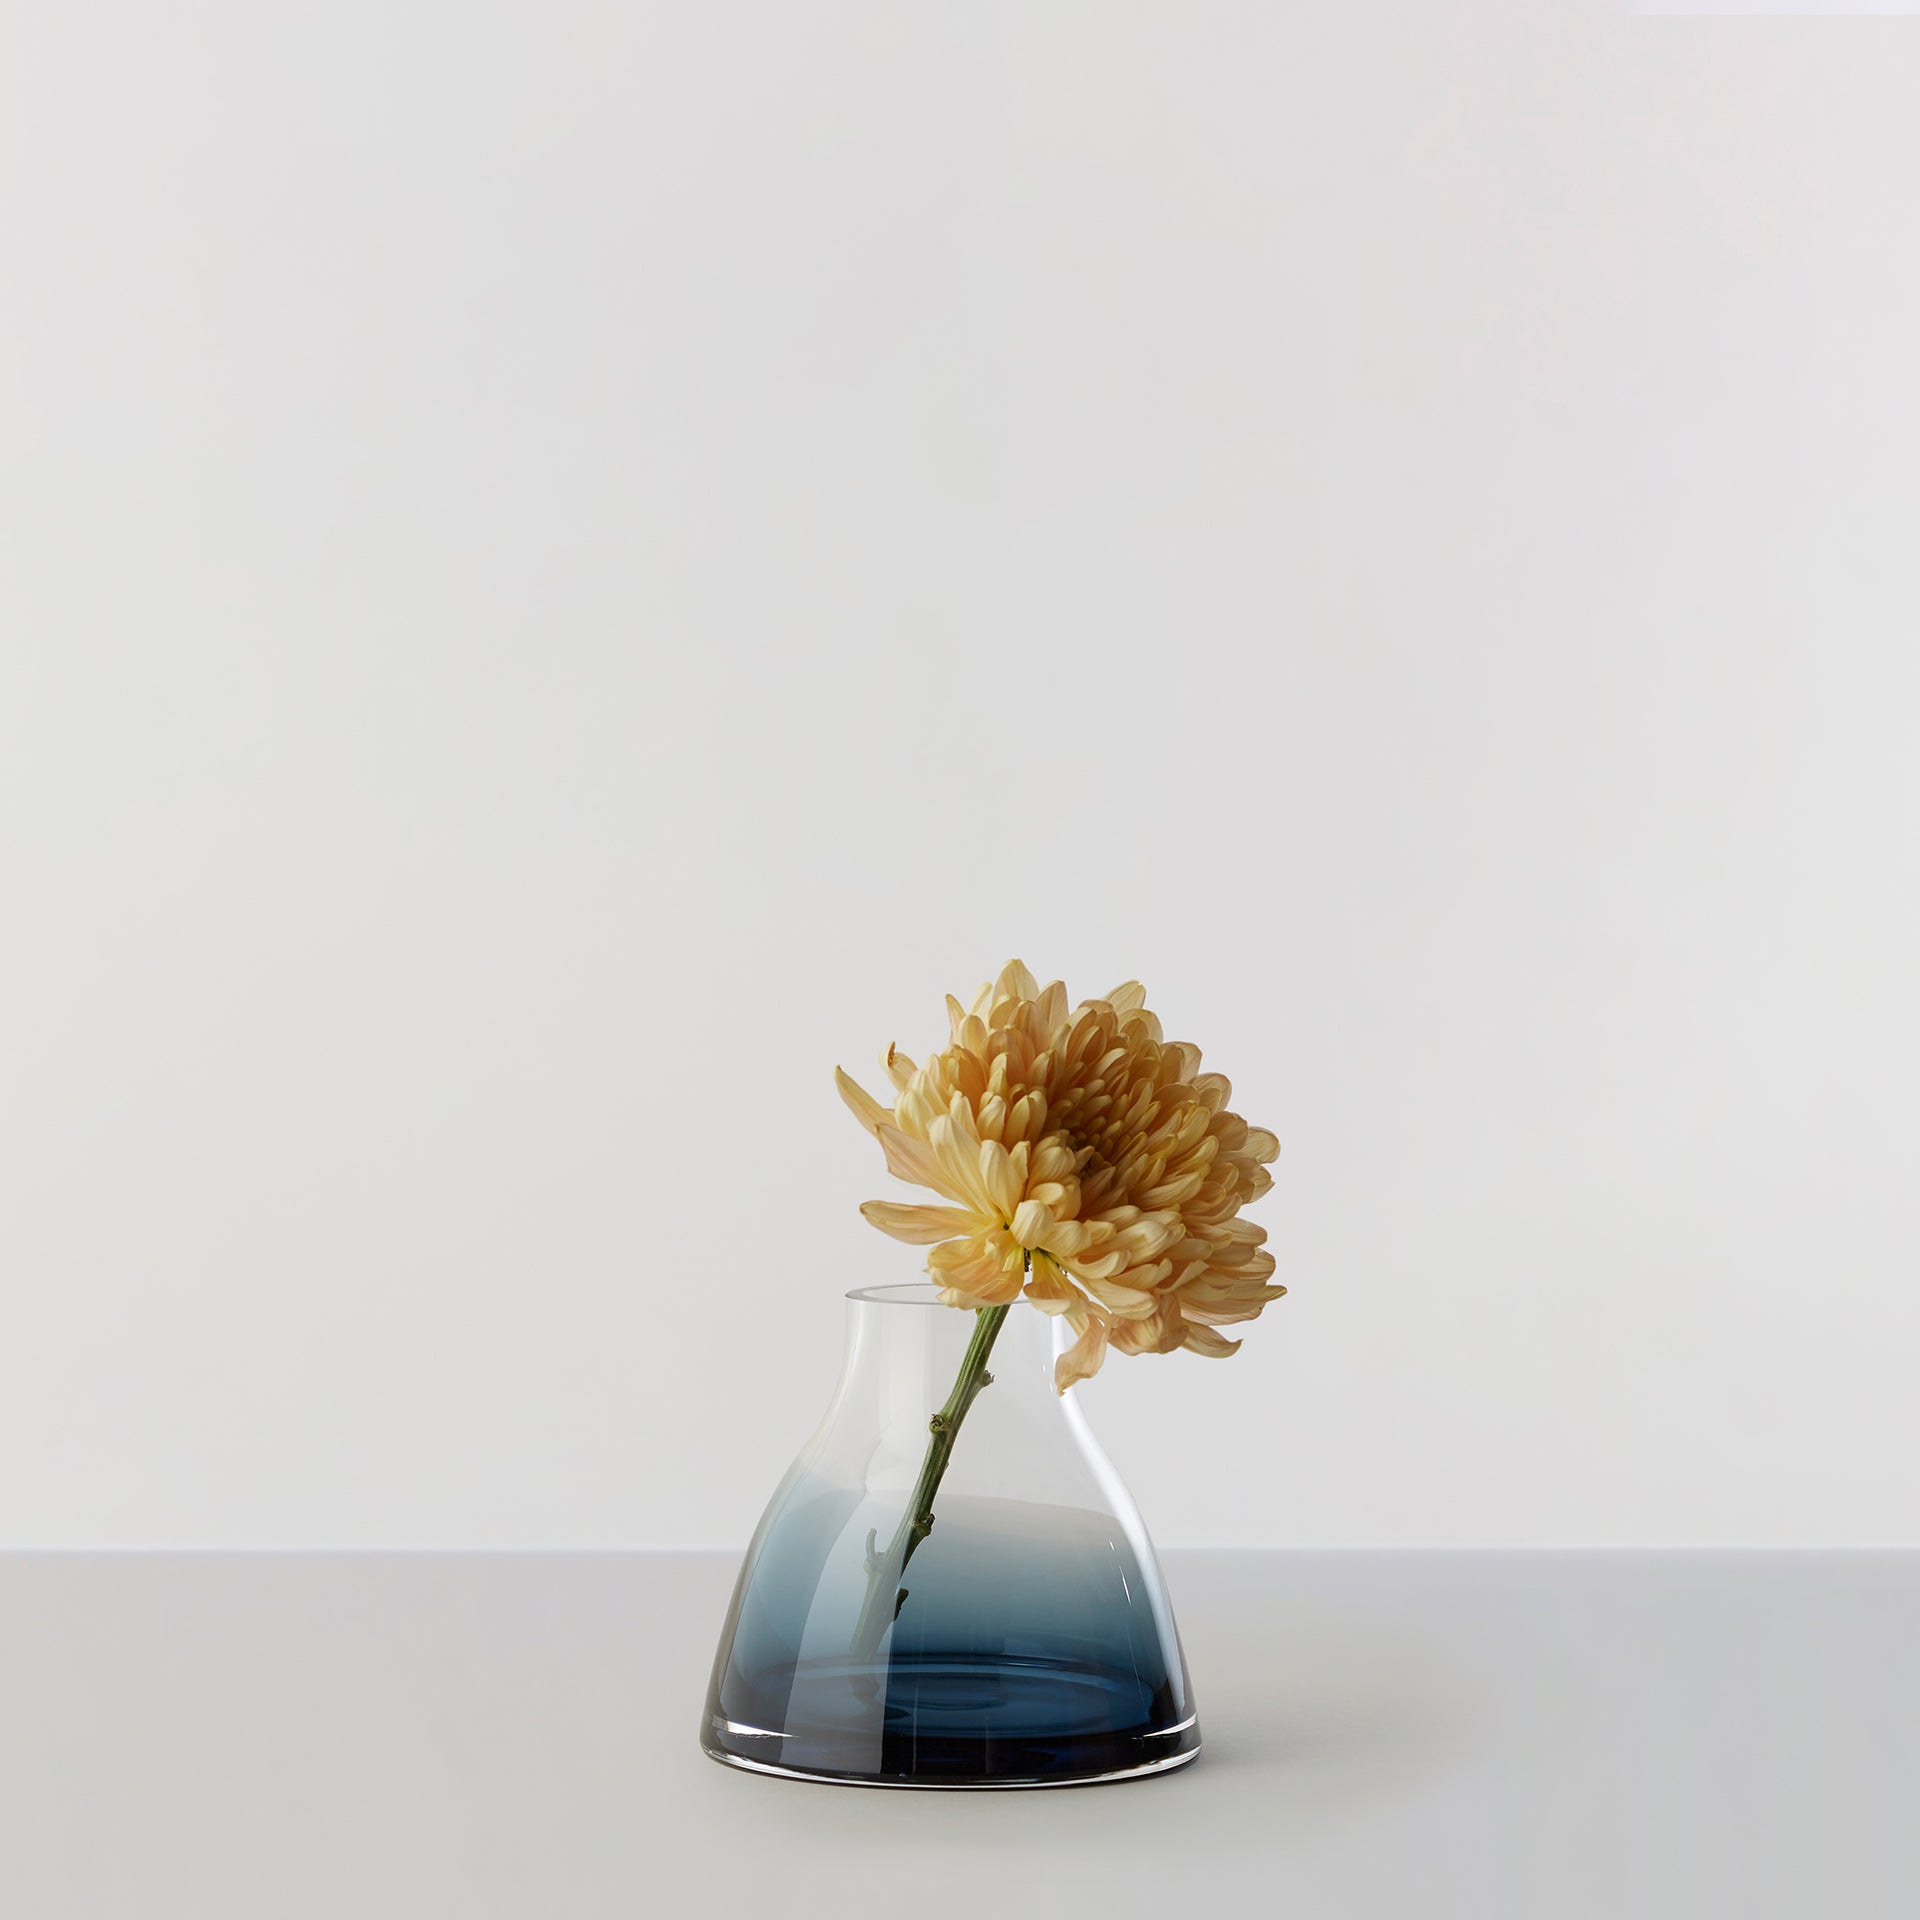 Billede af Flower Vase no. 1 - Indigo blue